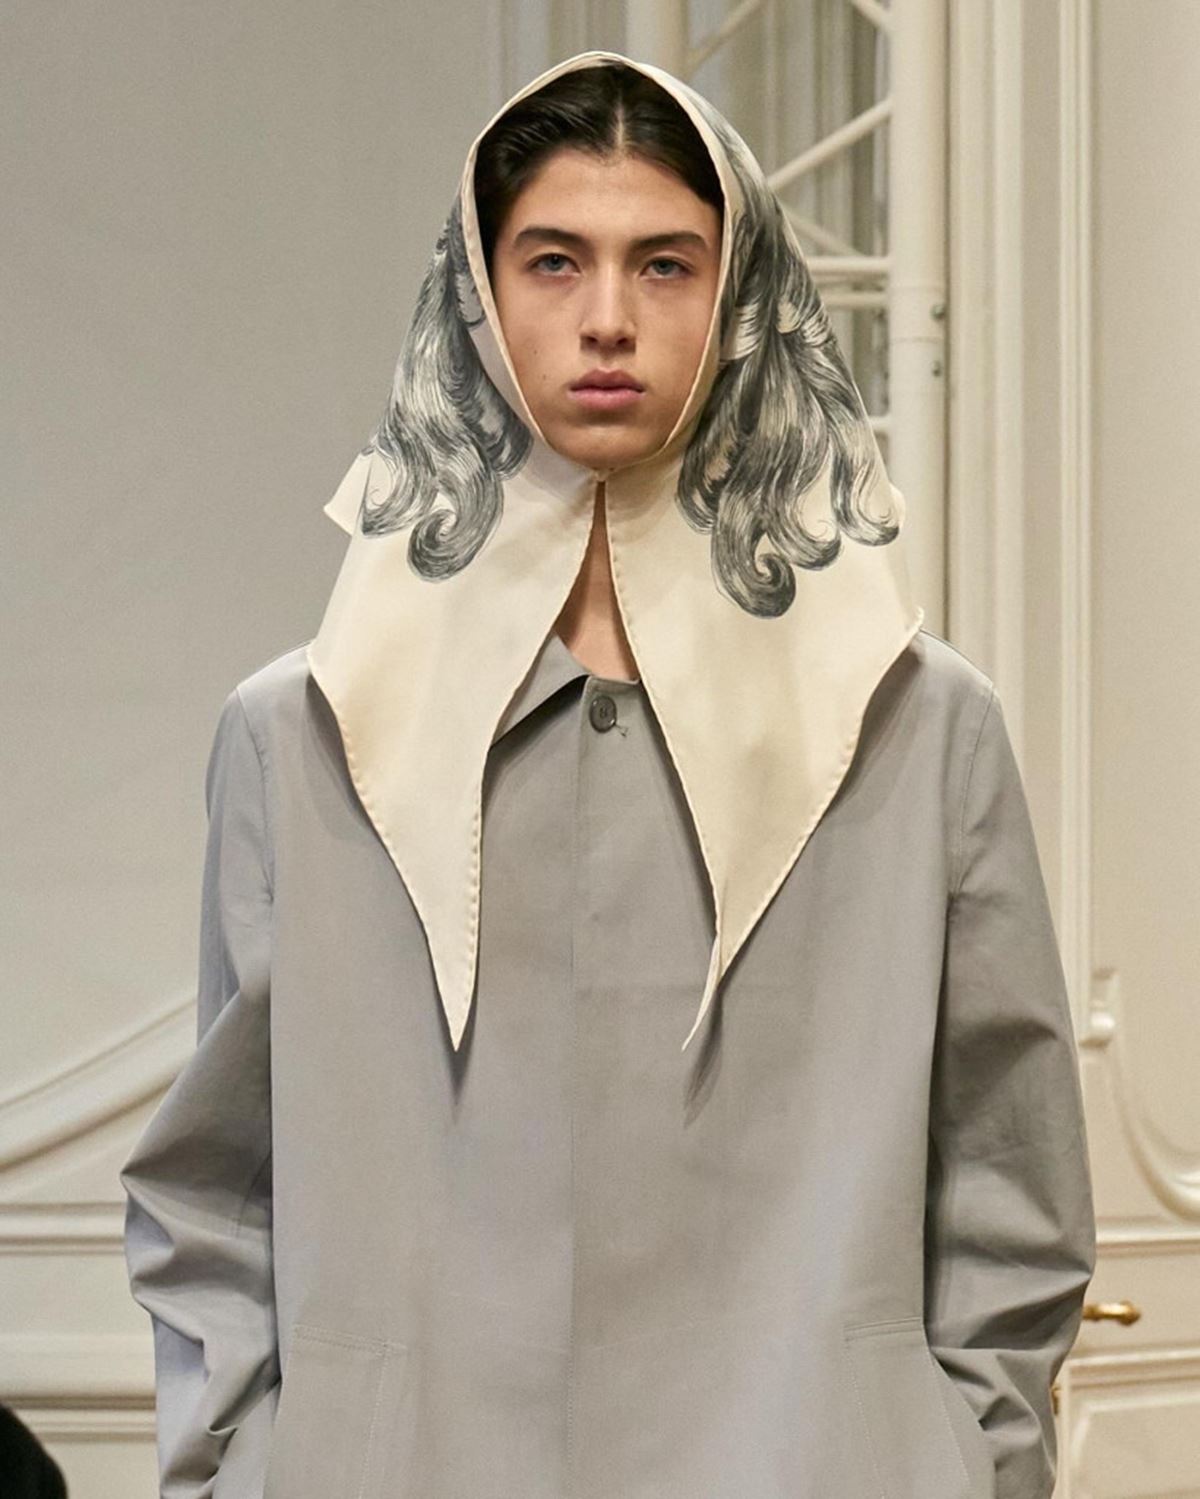 Givenchy moda masculina lenço surrealista - metrópoles